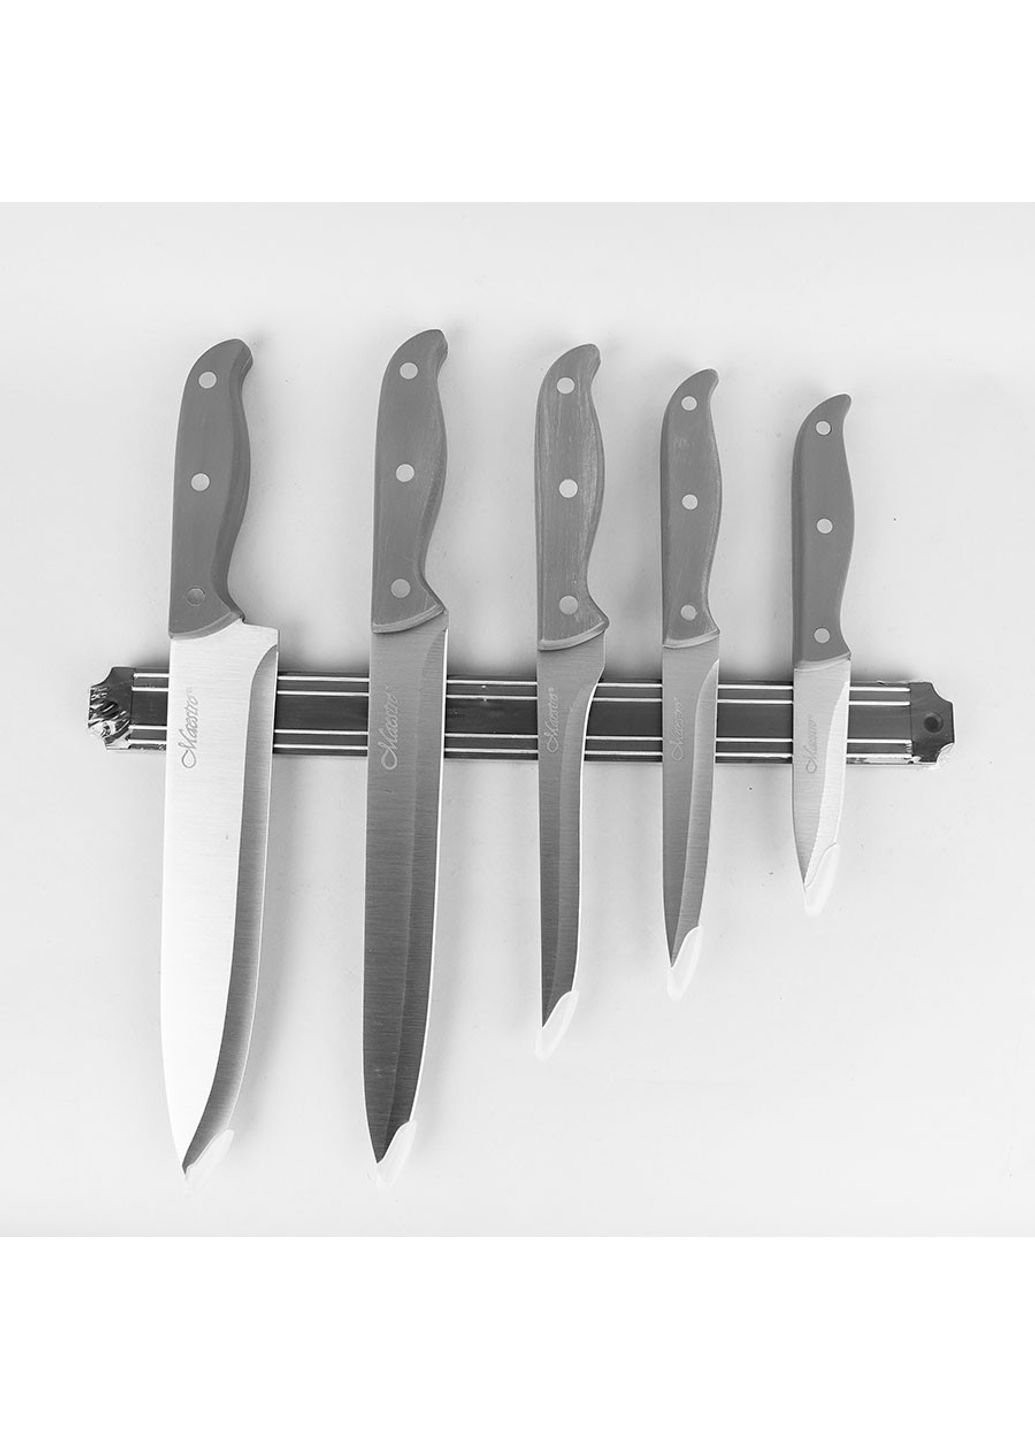 Набор кухонных ножей MR-1428 6 предметов Maestro комбинированные,